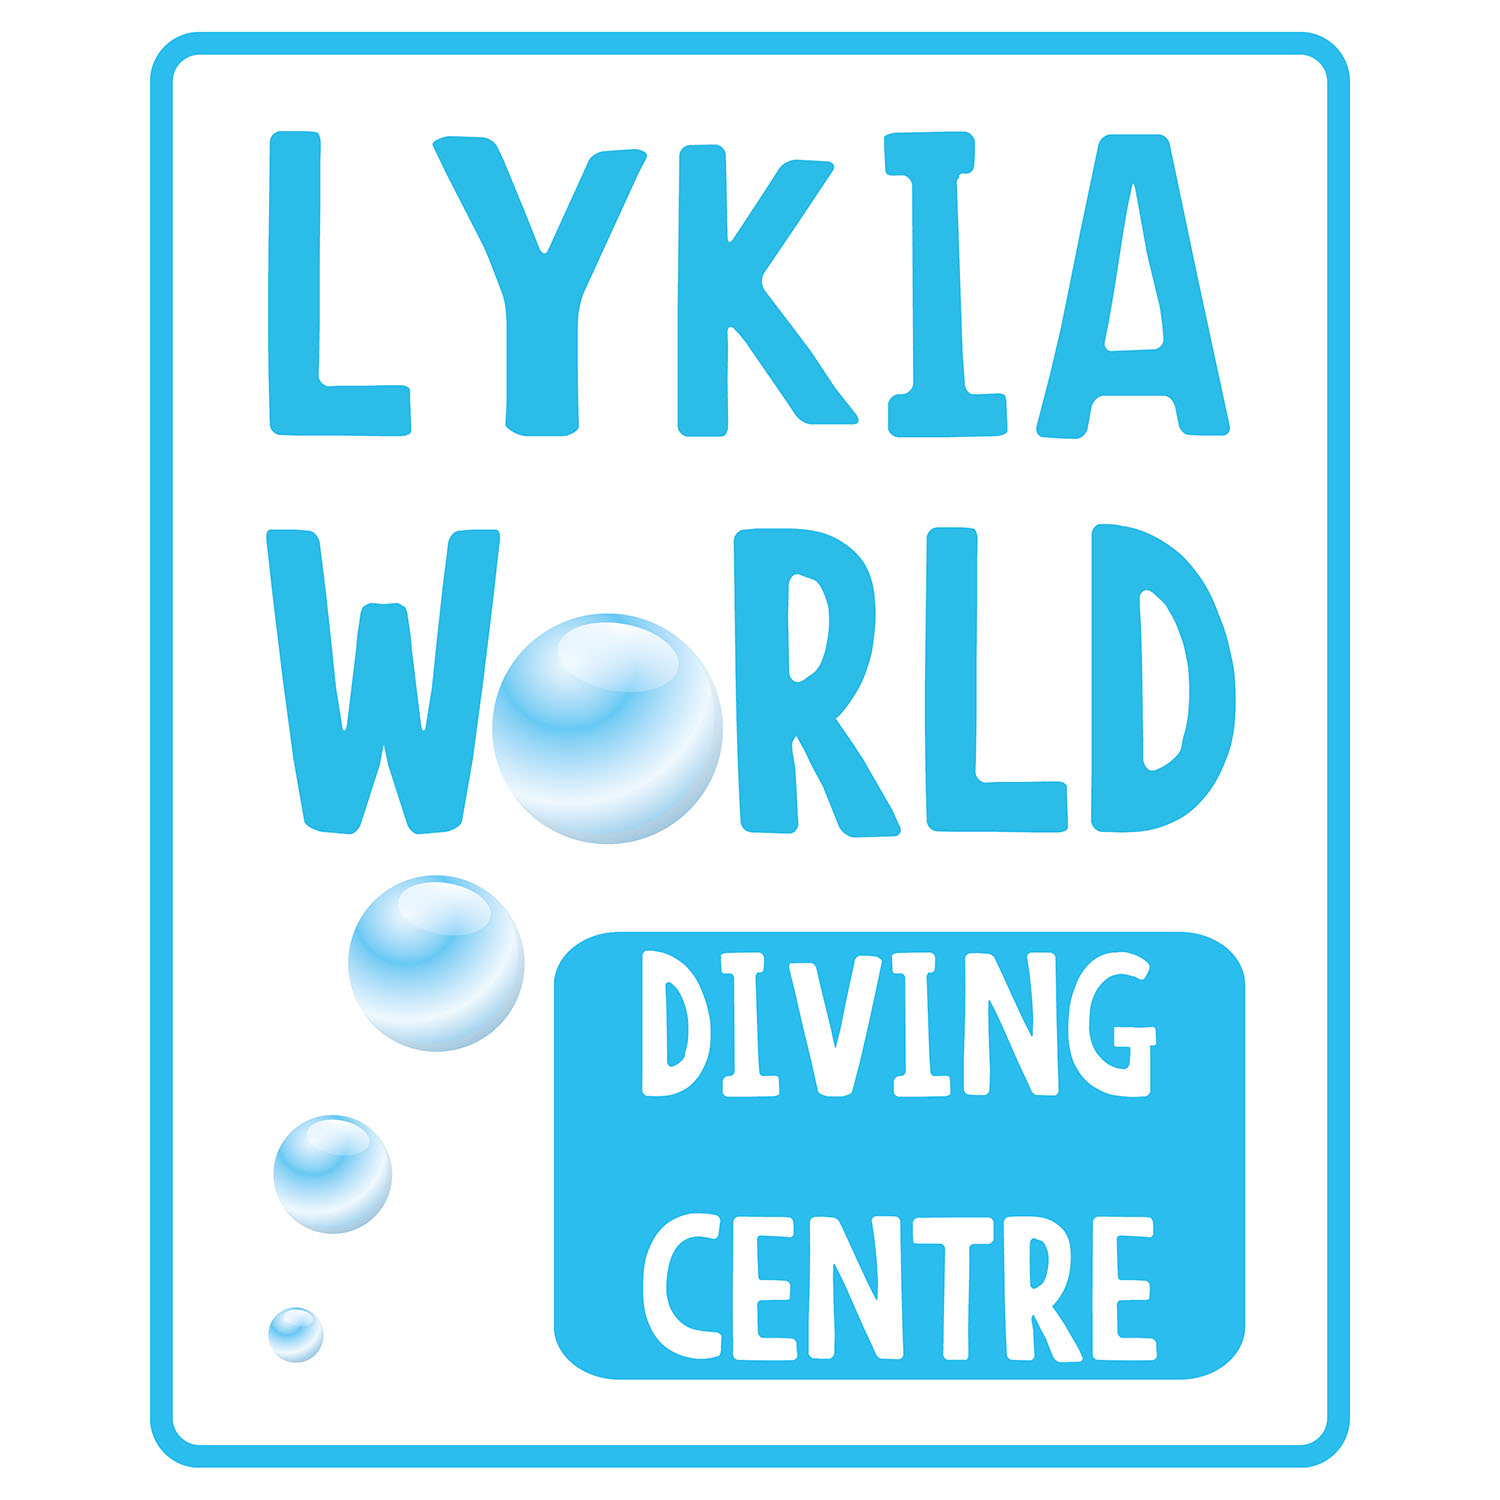 Lykia world diving centre logo tasarımı Fethiye Muğla